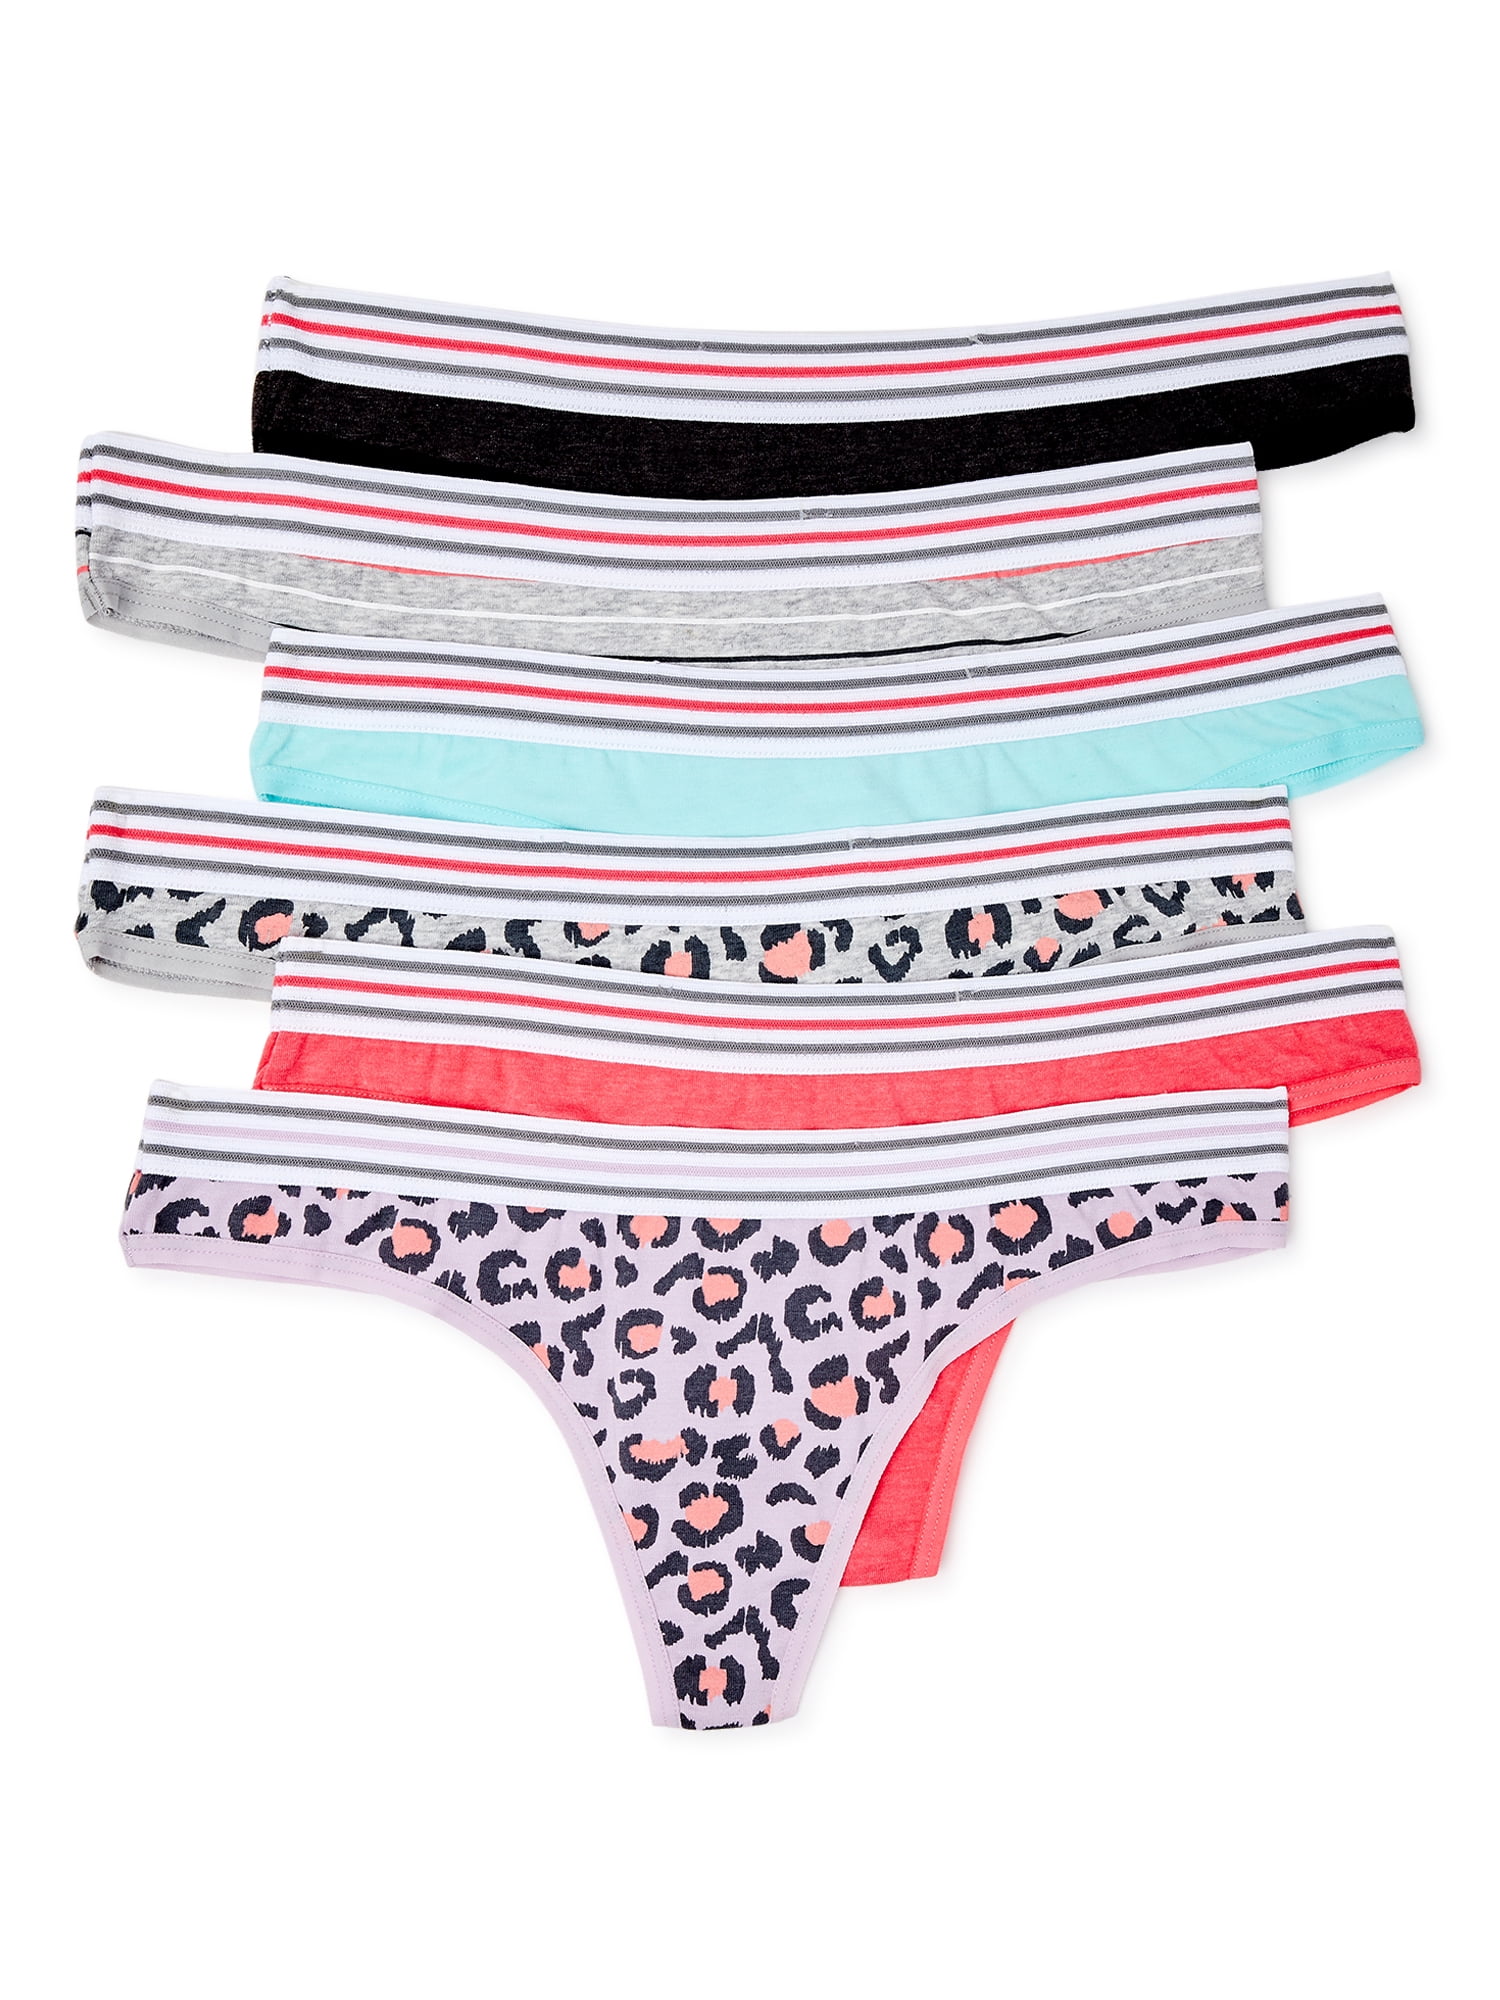 3207 L&K-II Women’s Cotton Thongs Panties Multi-Pack Color Stripes G-Strings Pack of 6 